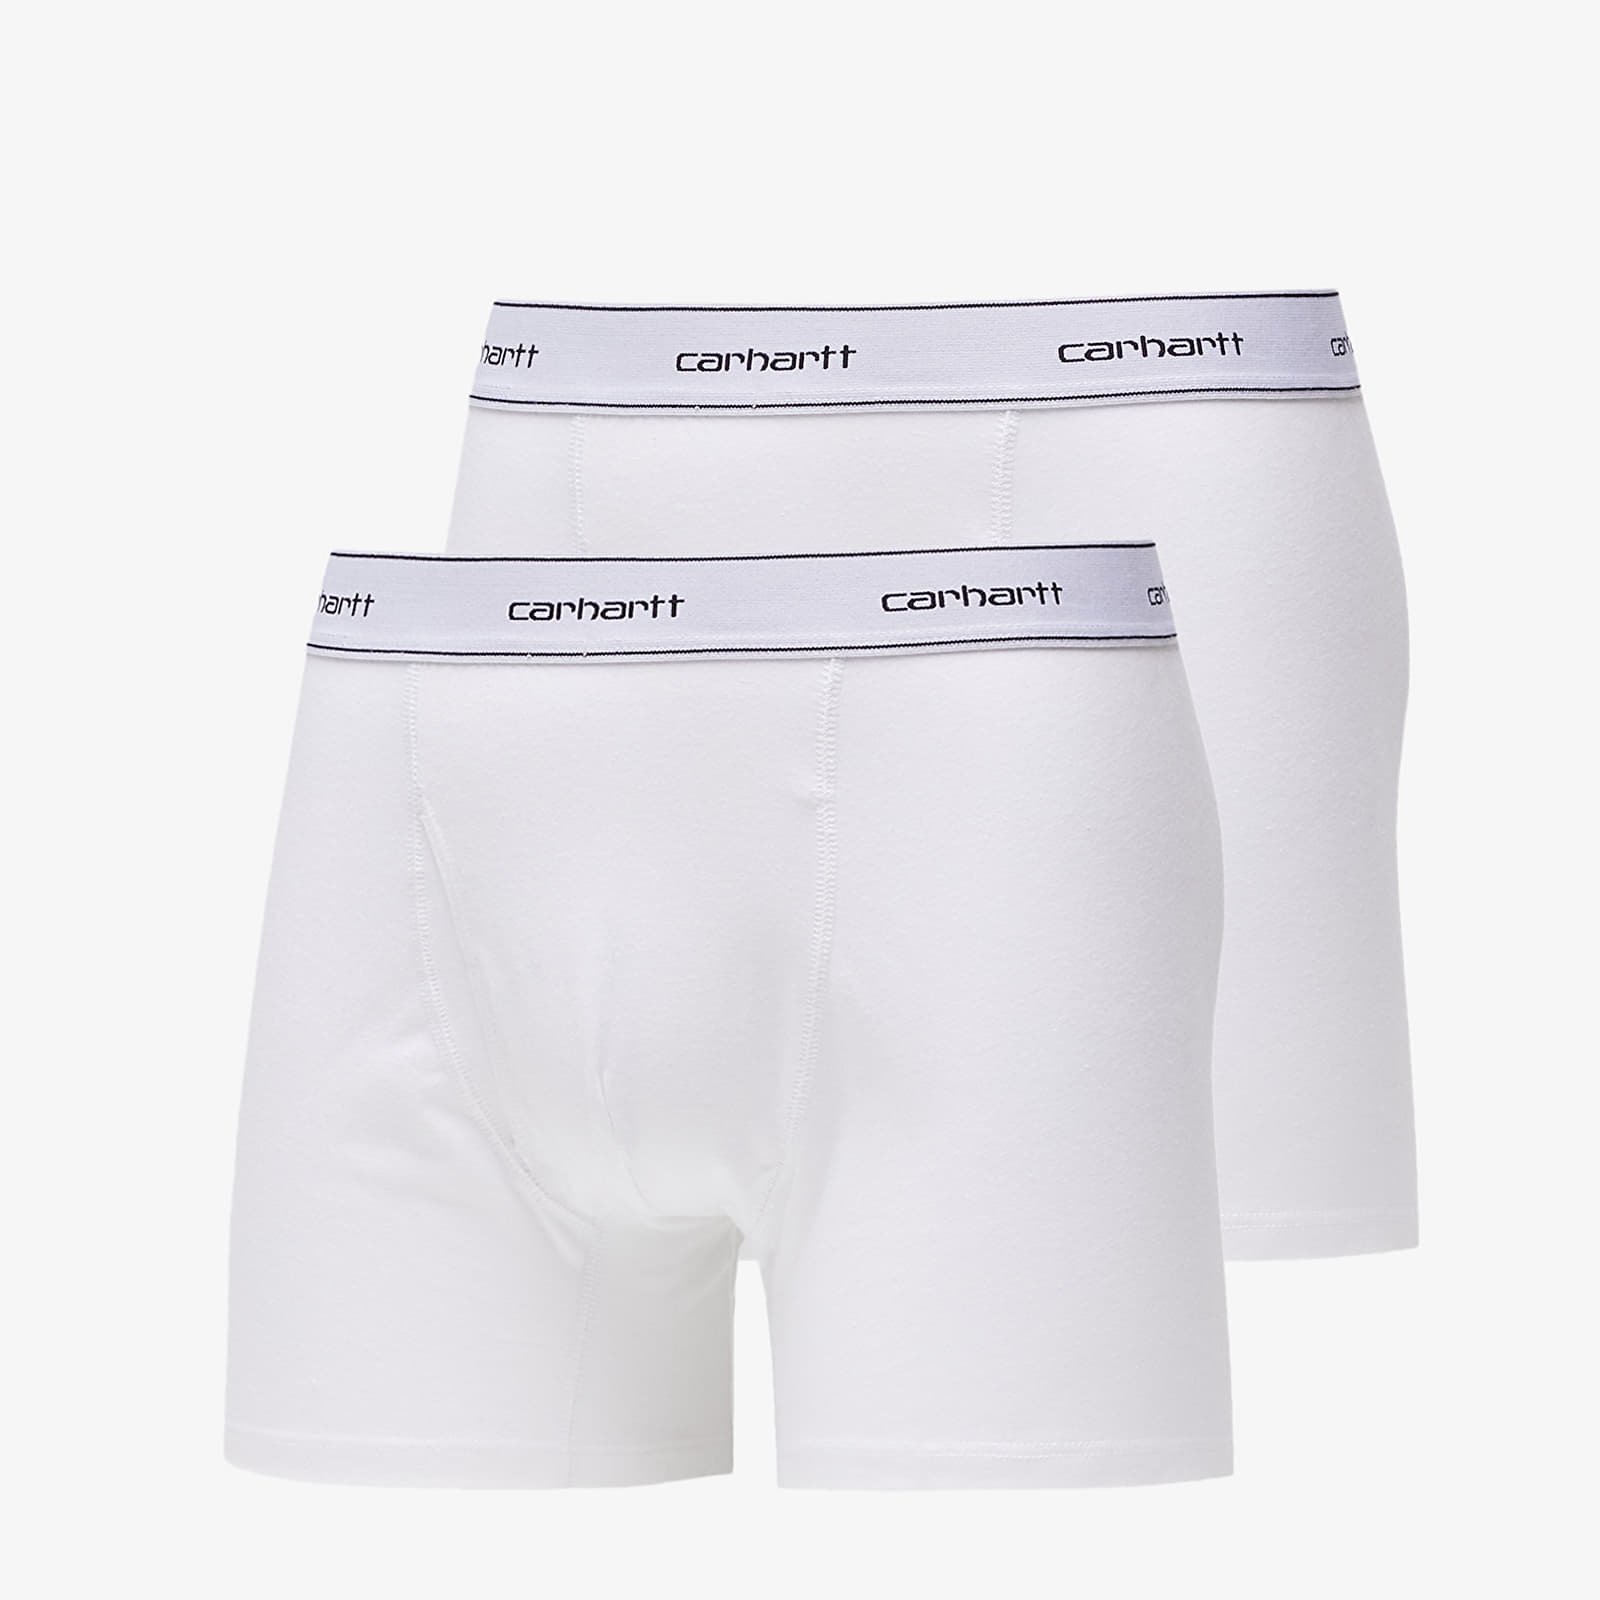 Carhartt : Mens Underwear 